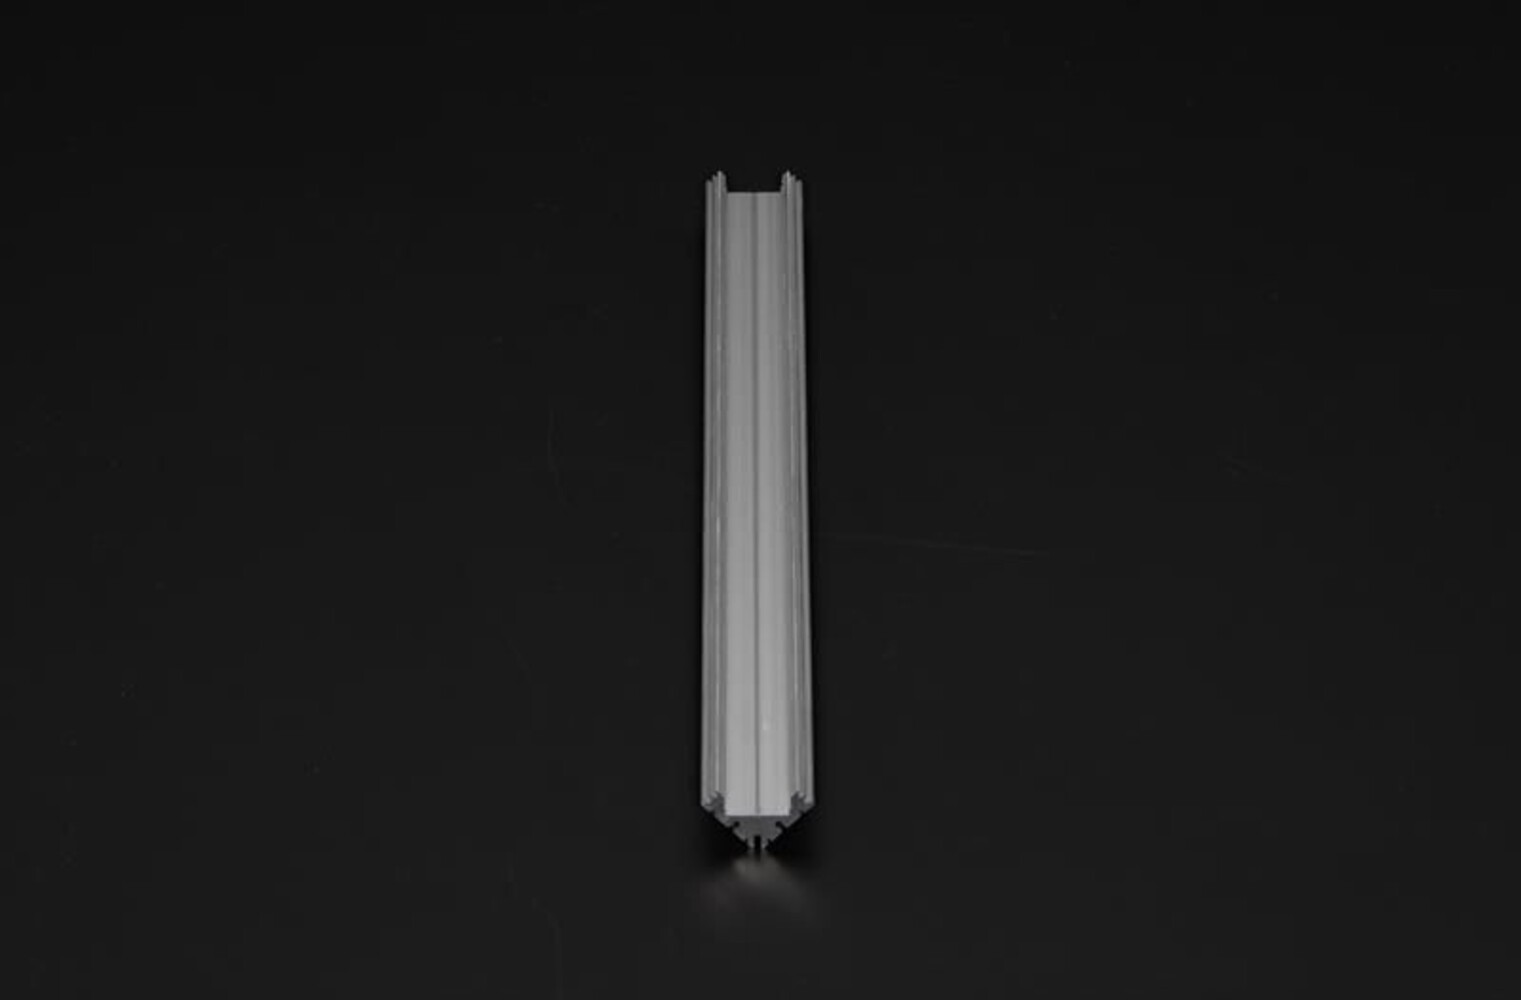 LED-Profil von Deko-Light in Silber matt, eloxiert, für 12-13,3 mm LED-Stripes